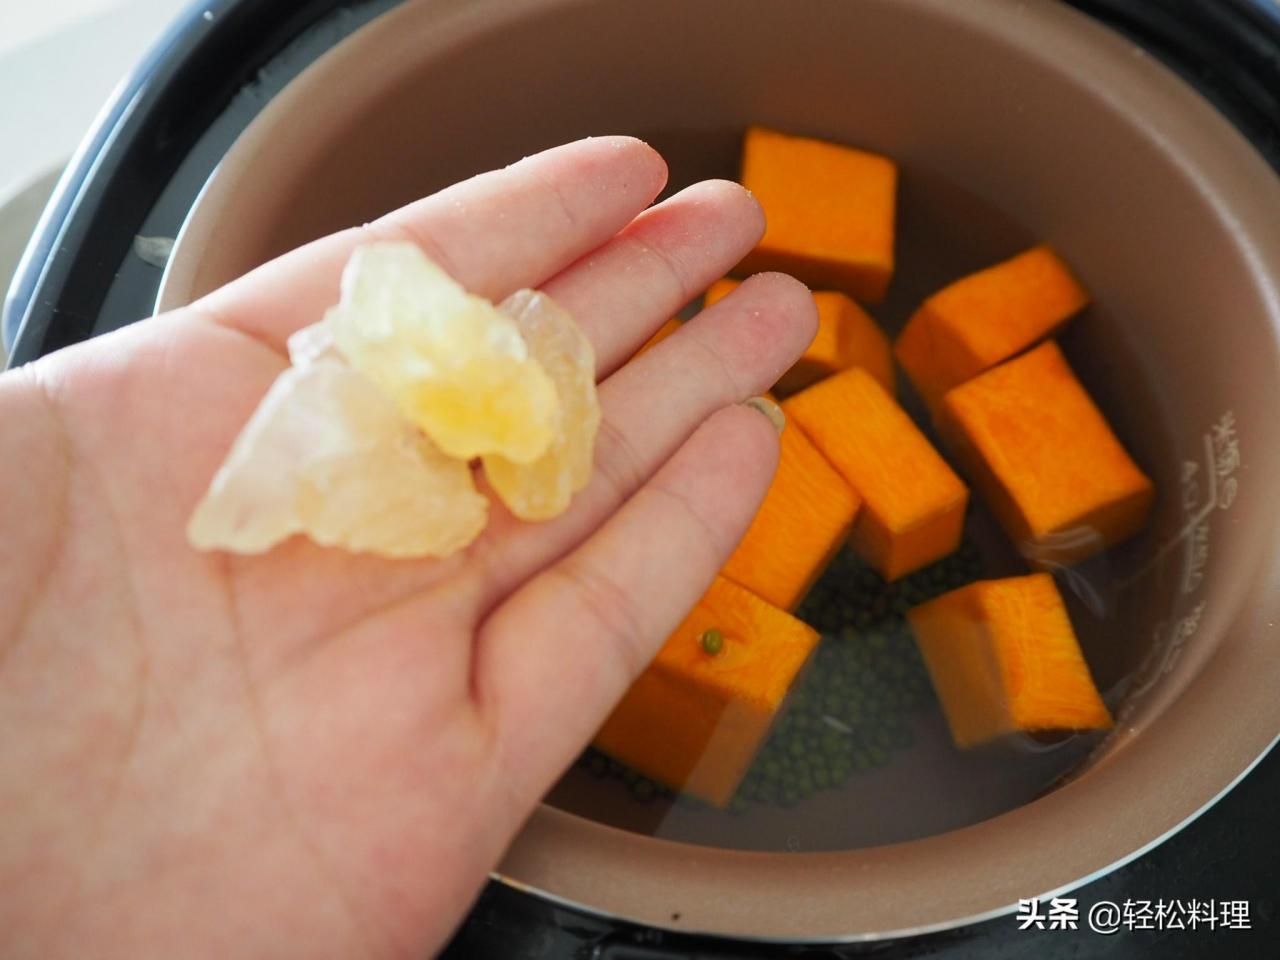 电饭锅煮绿豆汤